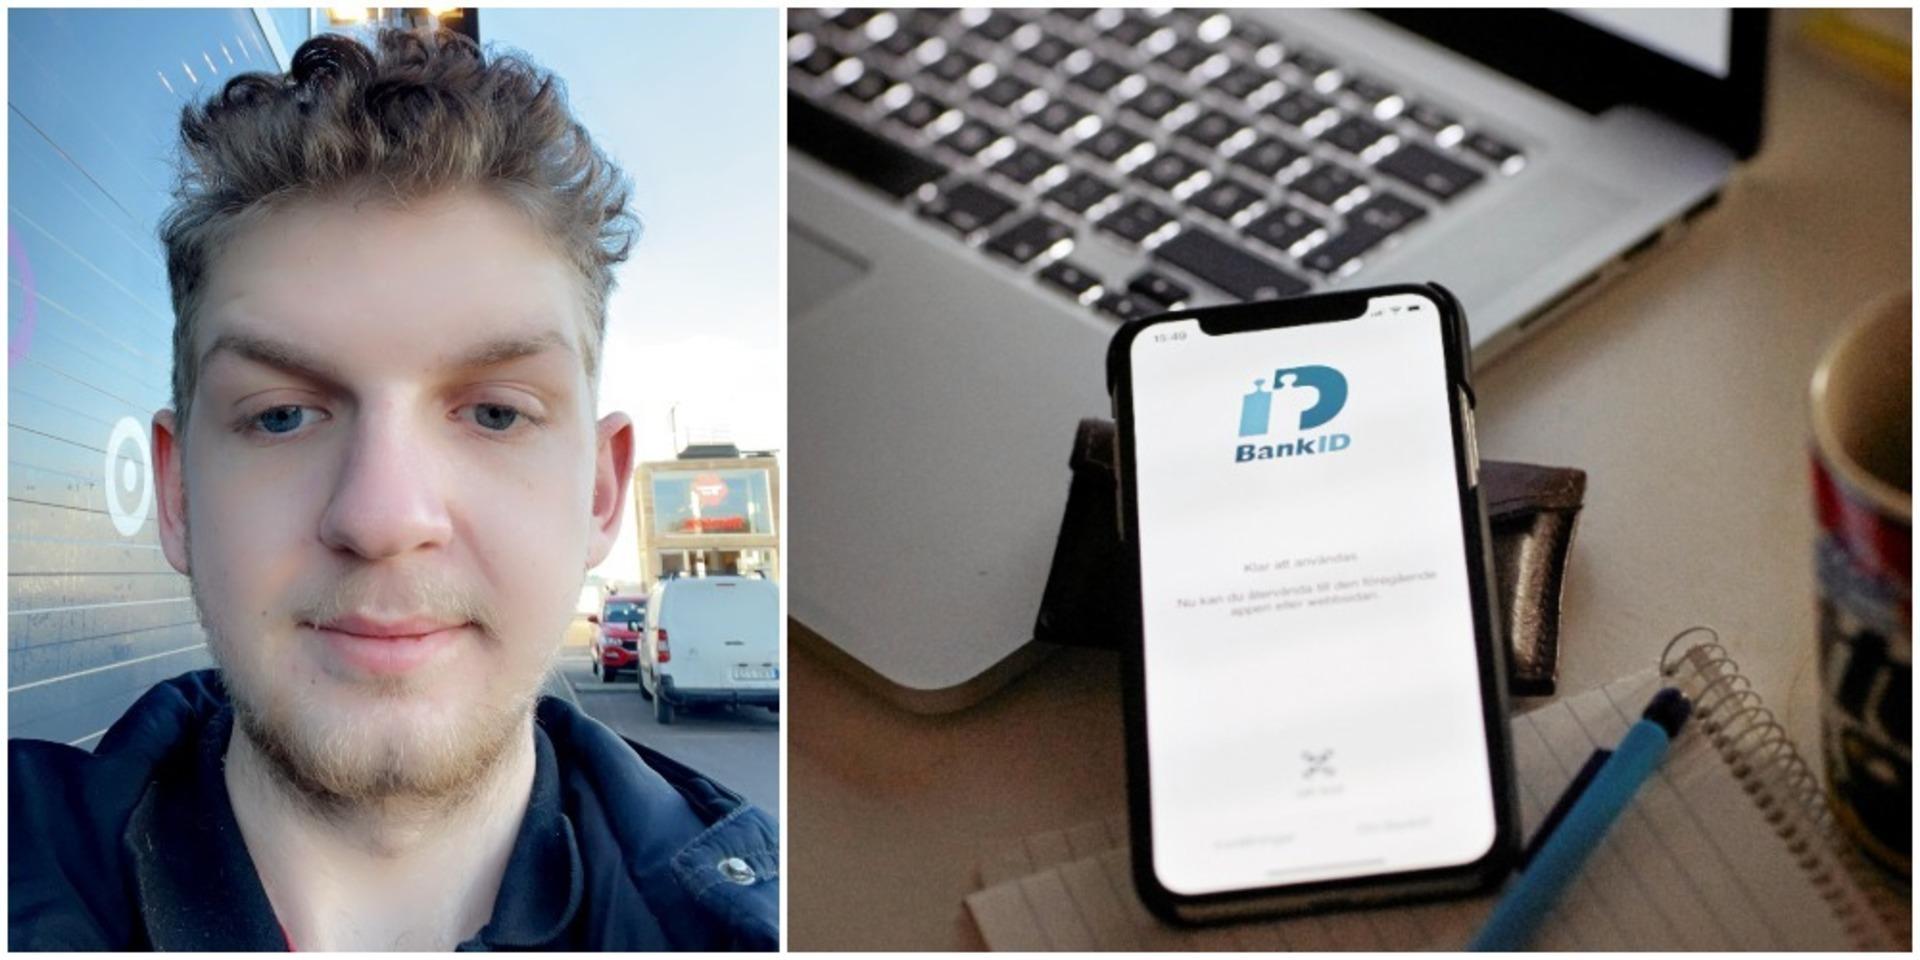 Filip Kindblad klickade i oförstånd på en länk på Instagram med hopp om jobb. Sedan började i stället räkningarna ticka in på saker som någon nu misstänks köpt i hans namn genom att kapa hans identitet.